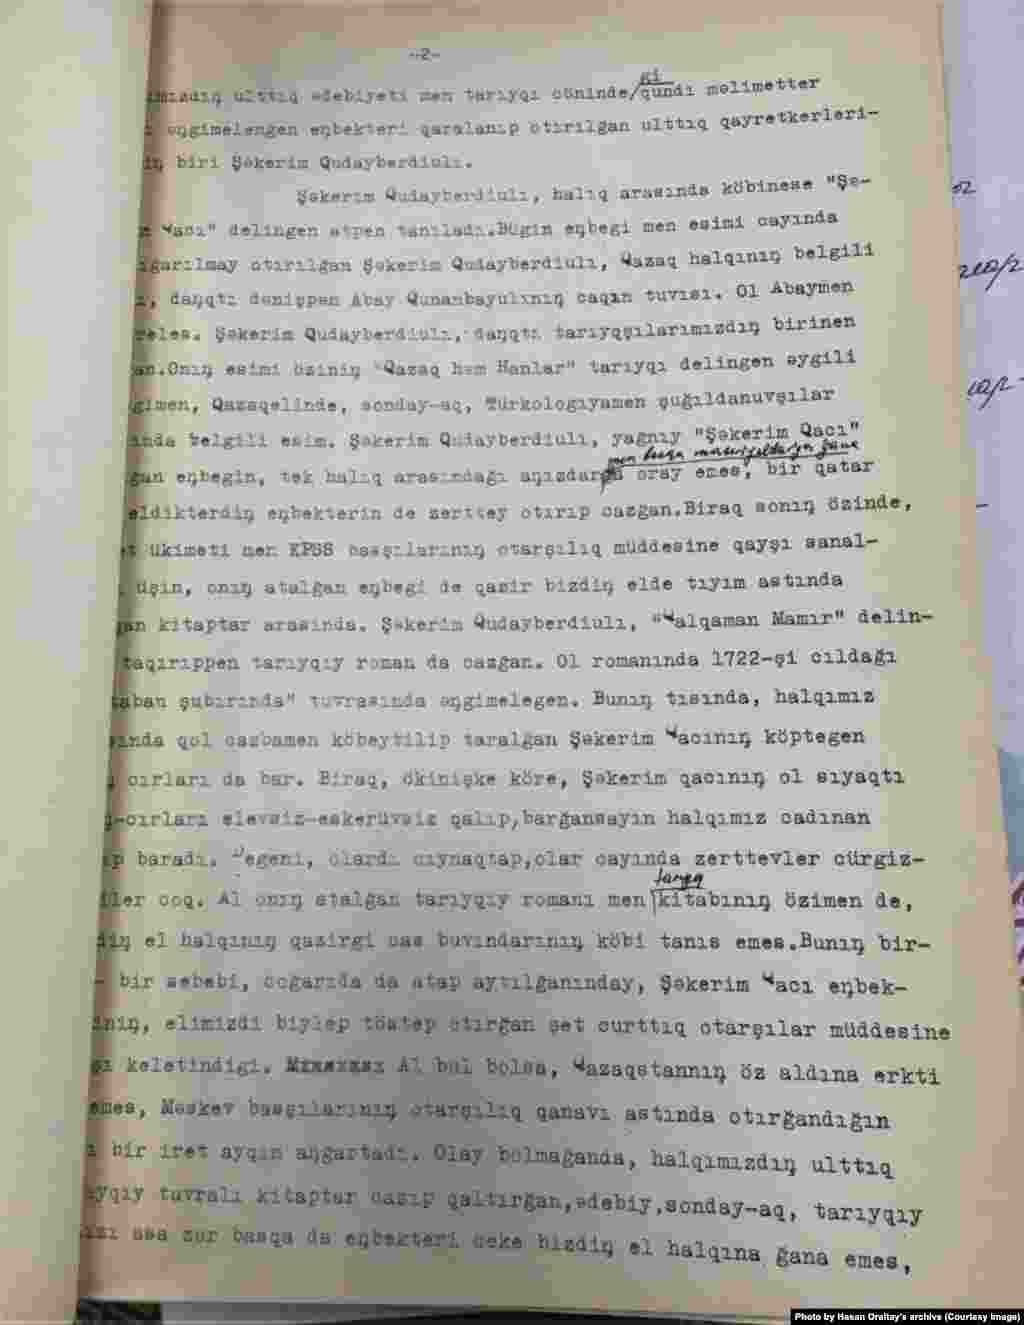 Азаттық радиосының 1973 жылғы 27 қаңтардағы Шәкерім шығармалары туралы хабарының жазбасы.